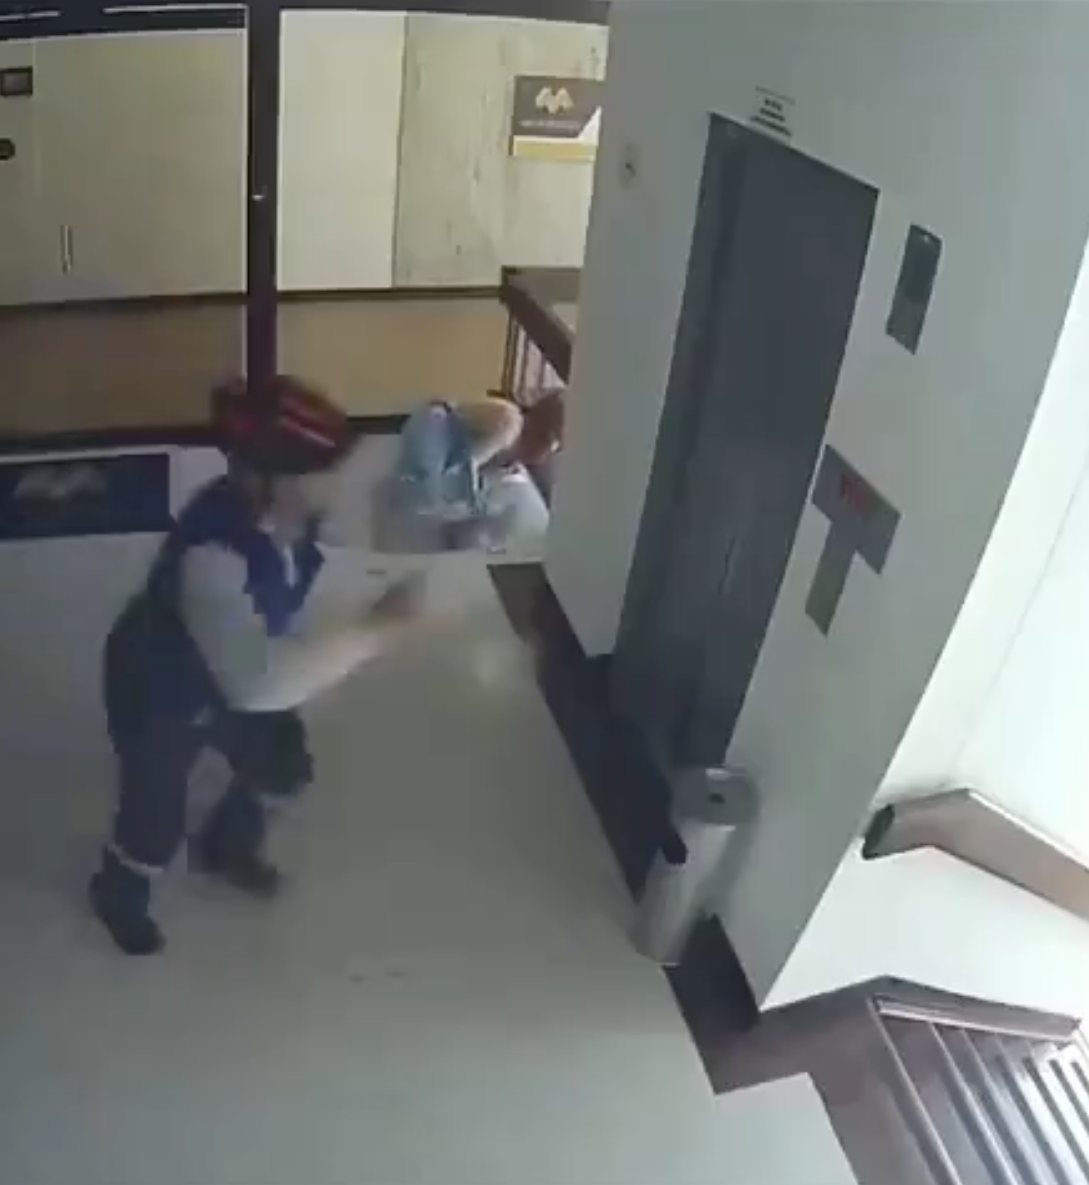 La madre intenta agarrar a su hijo mientras otro hombre corre hacia el piso inferior para atraparlo | Foto: Instagram.com/fatherly